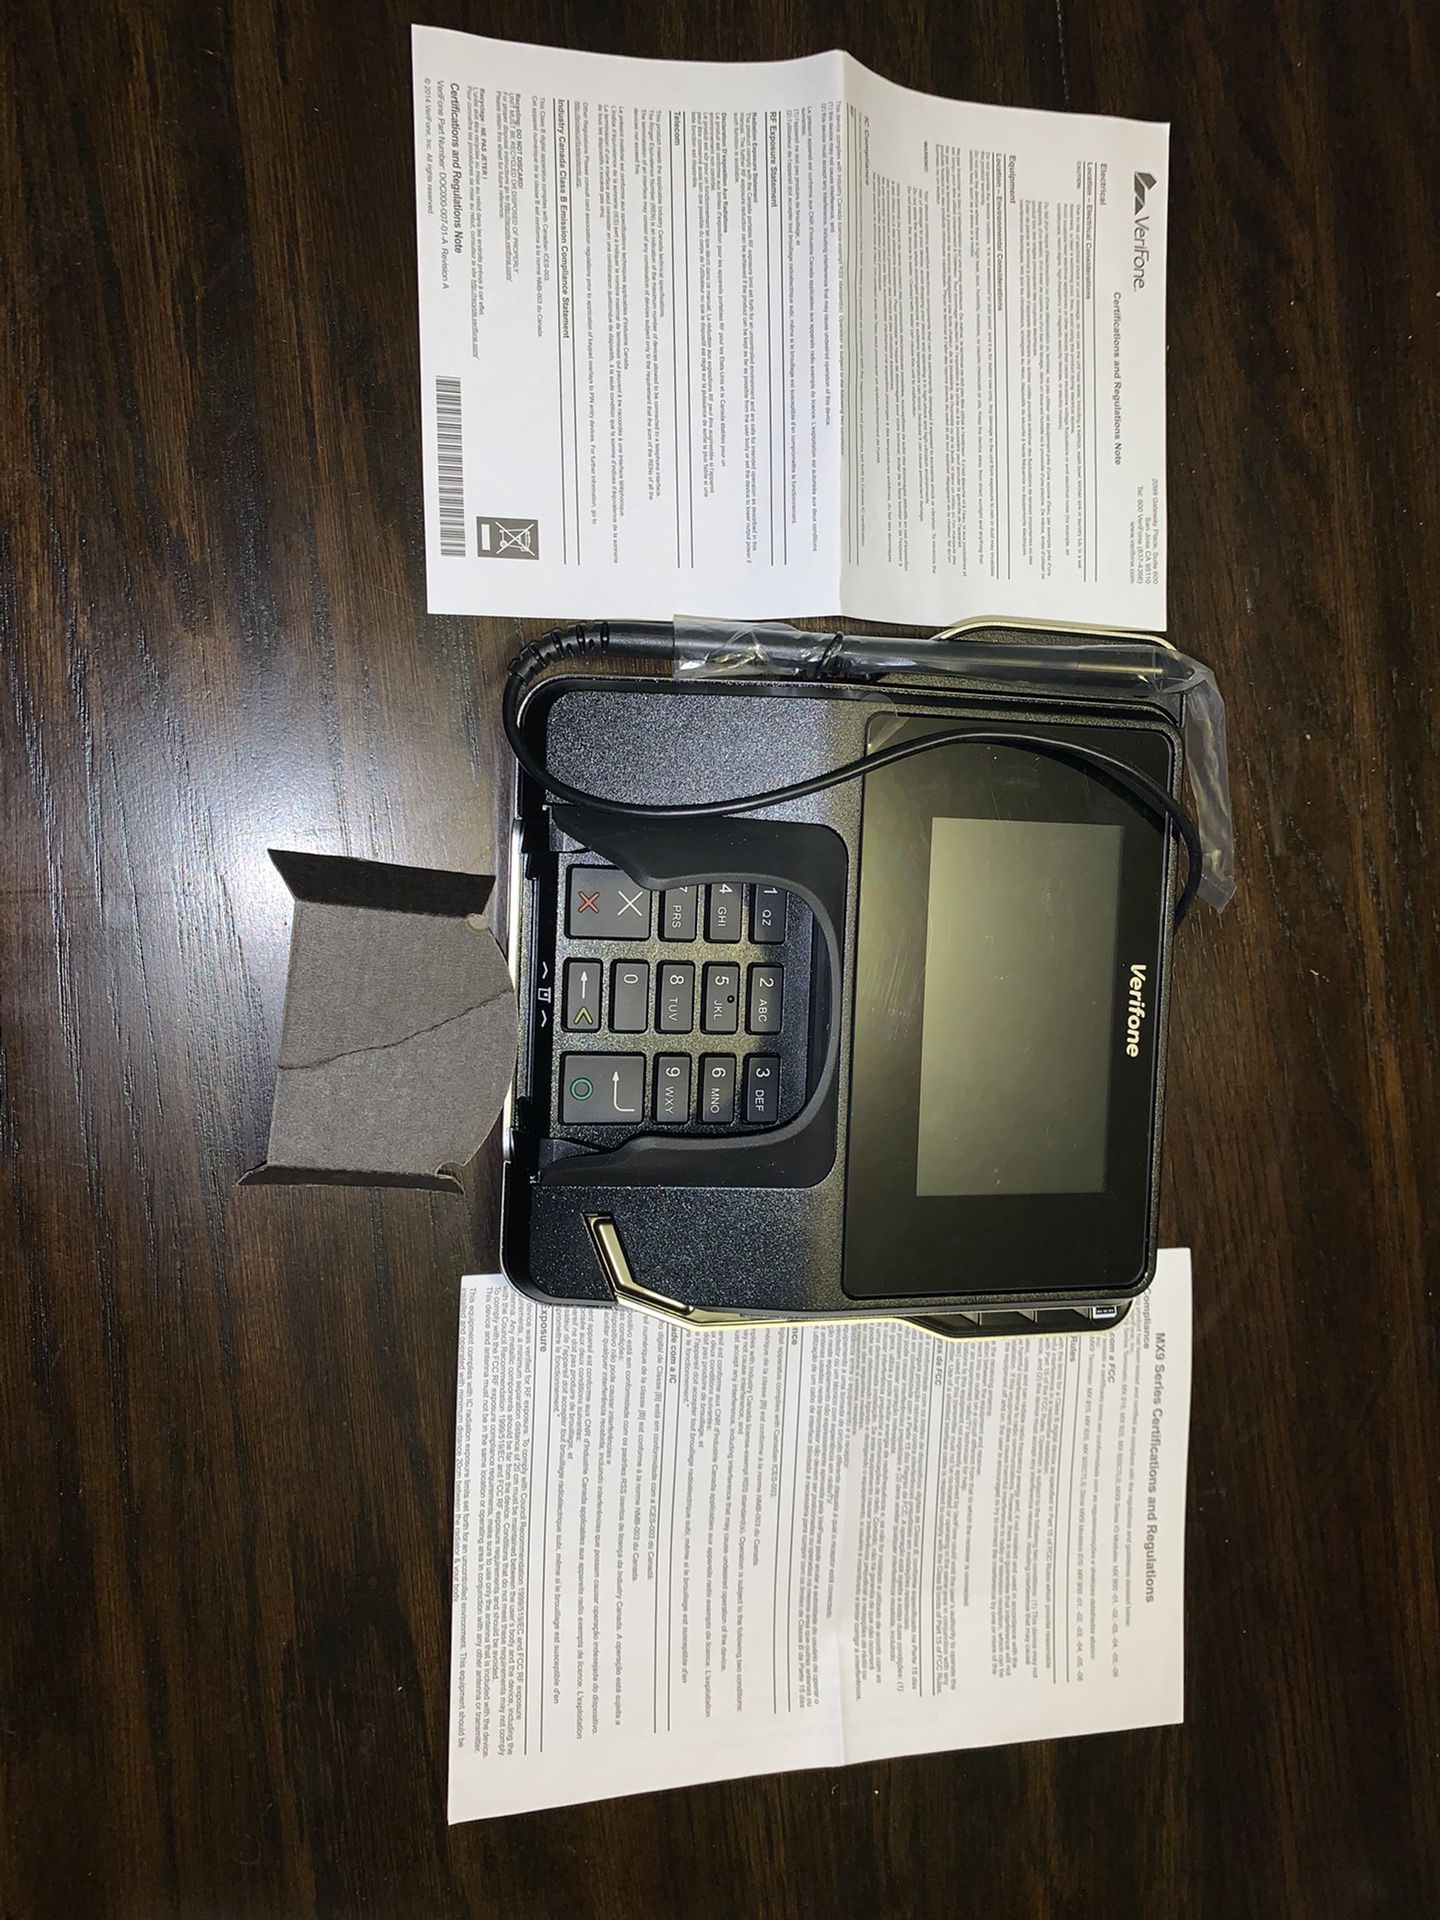 VeriFone MX 900 Series; Credit Card machine